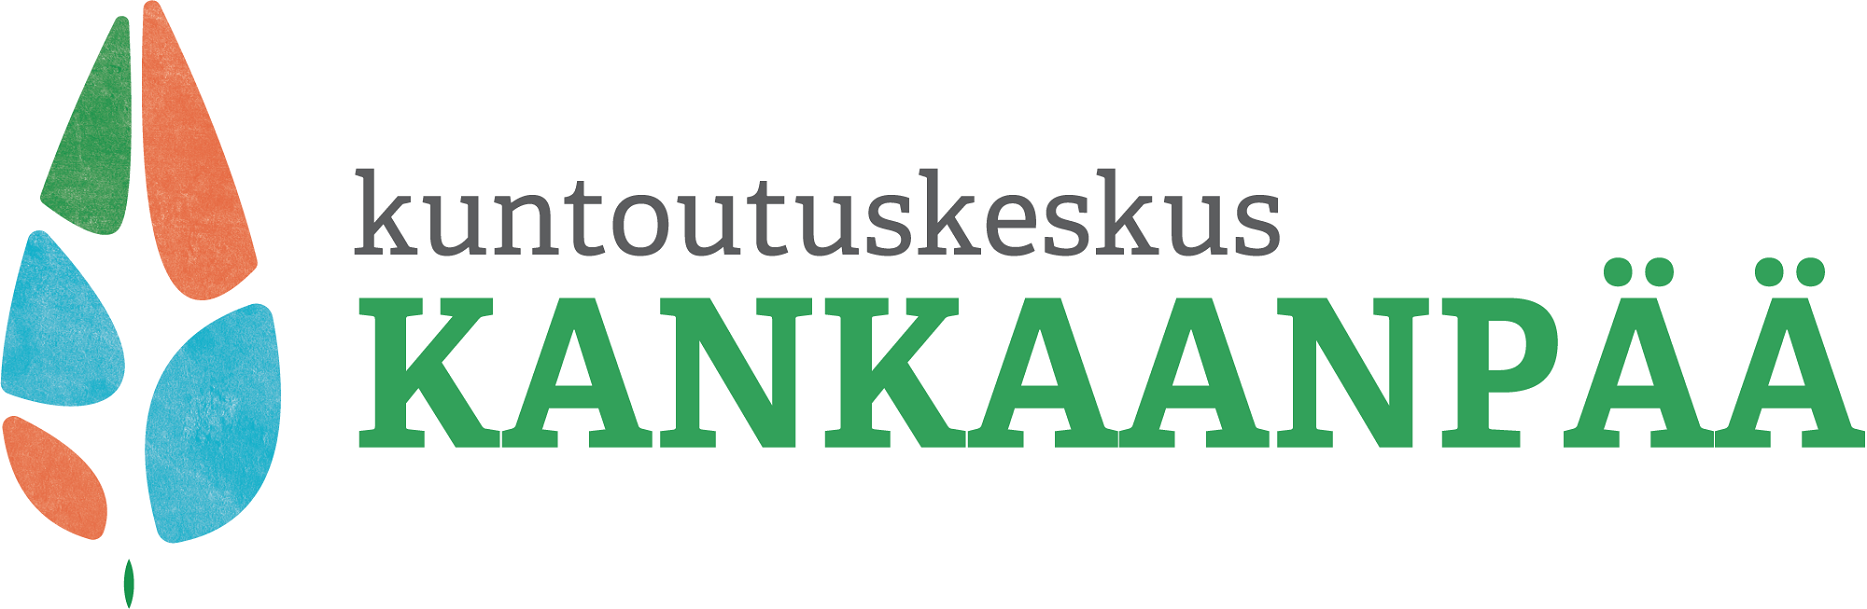 Kuntoutuskeskus Kankaanpää